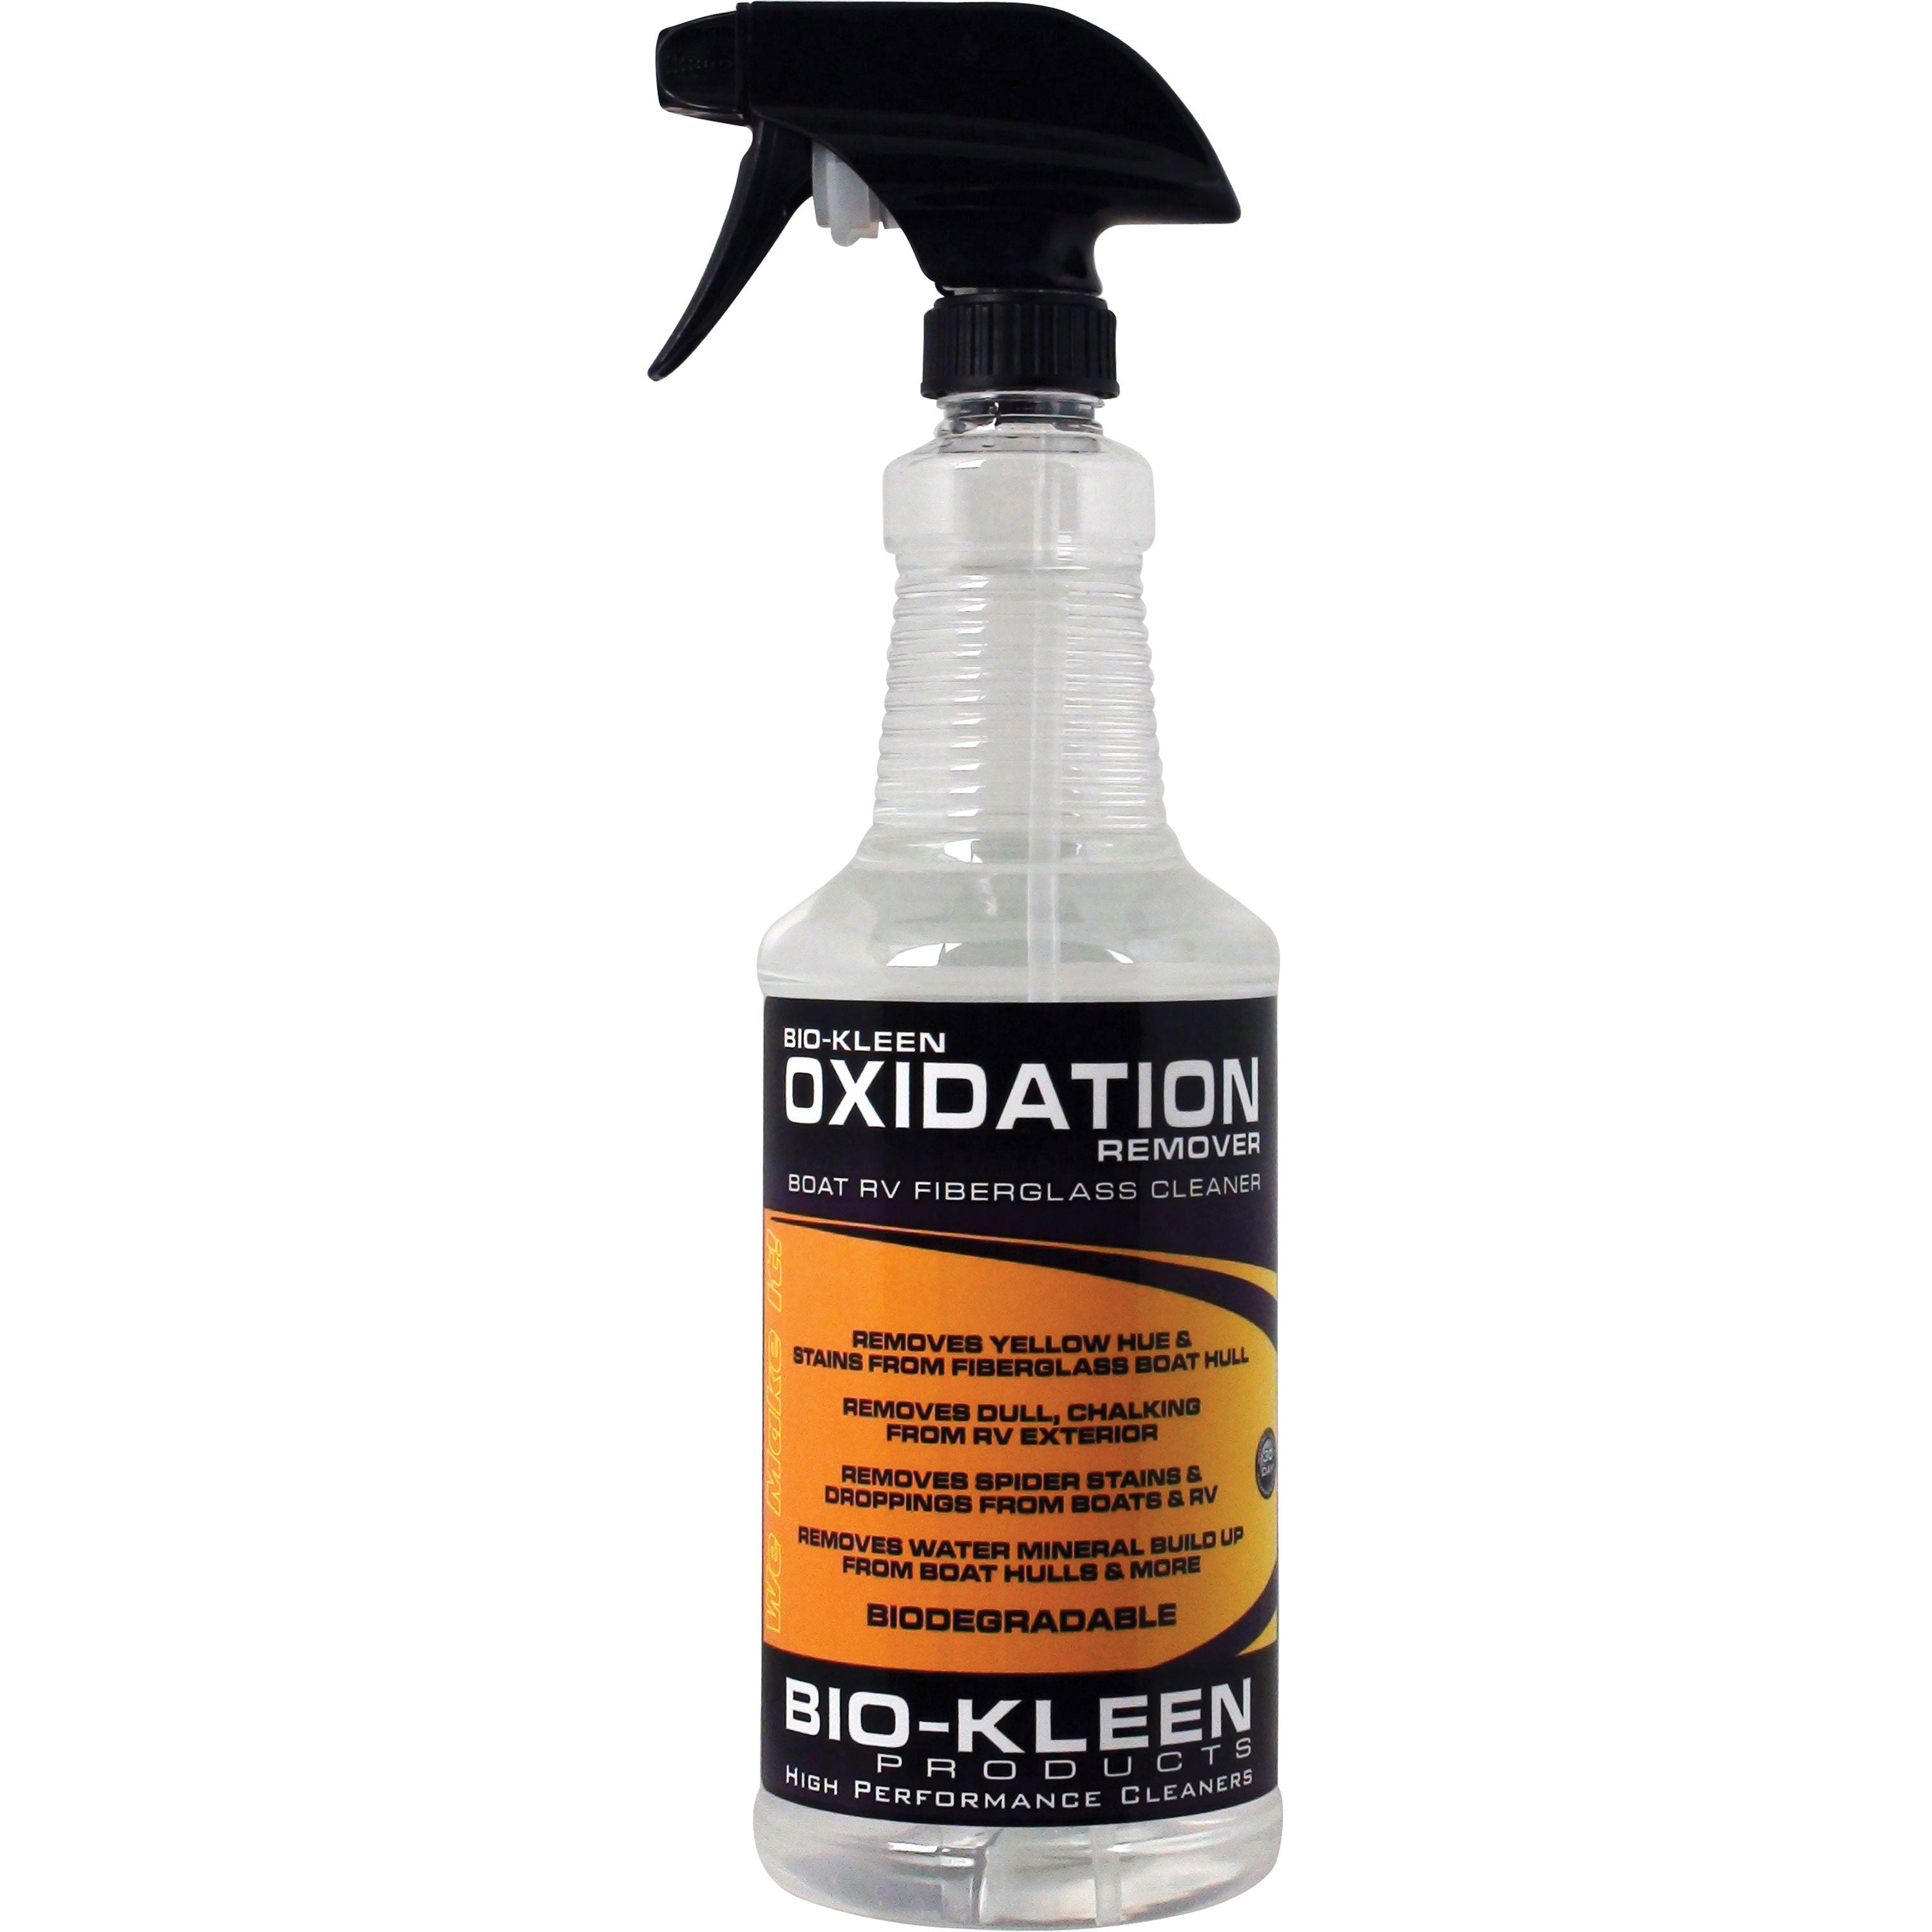 Bio-Kleen M00707 Oxidation Remover - 32 oz.